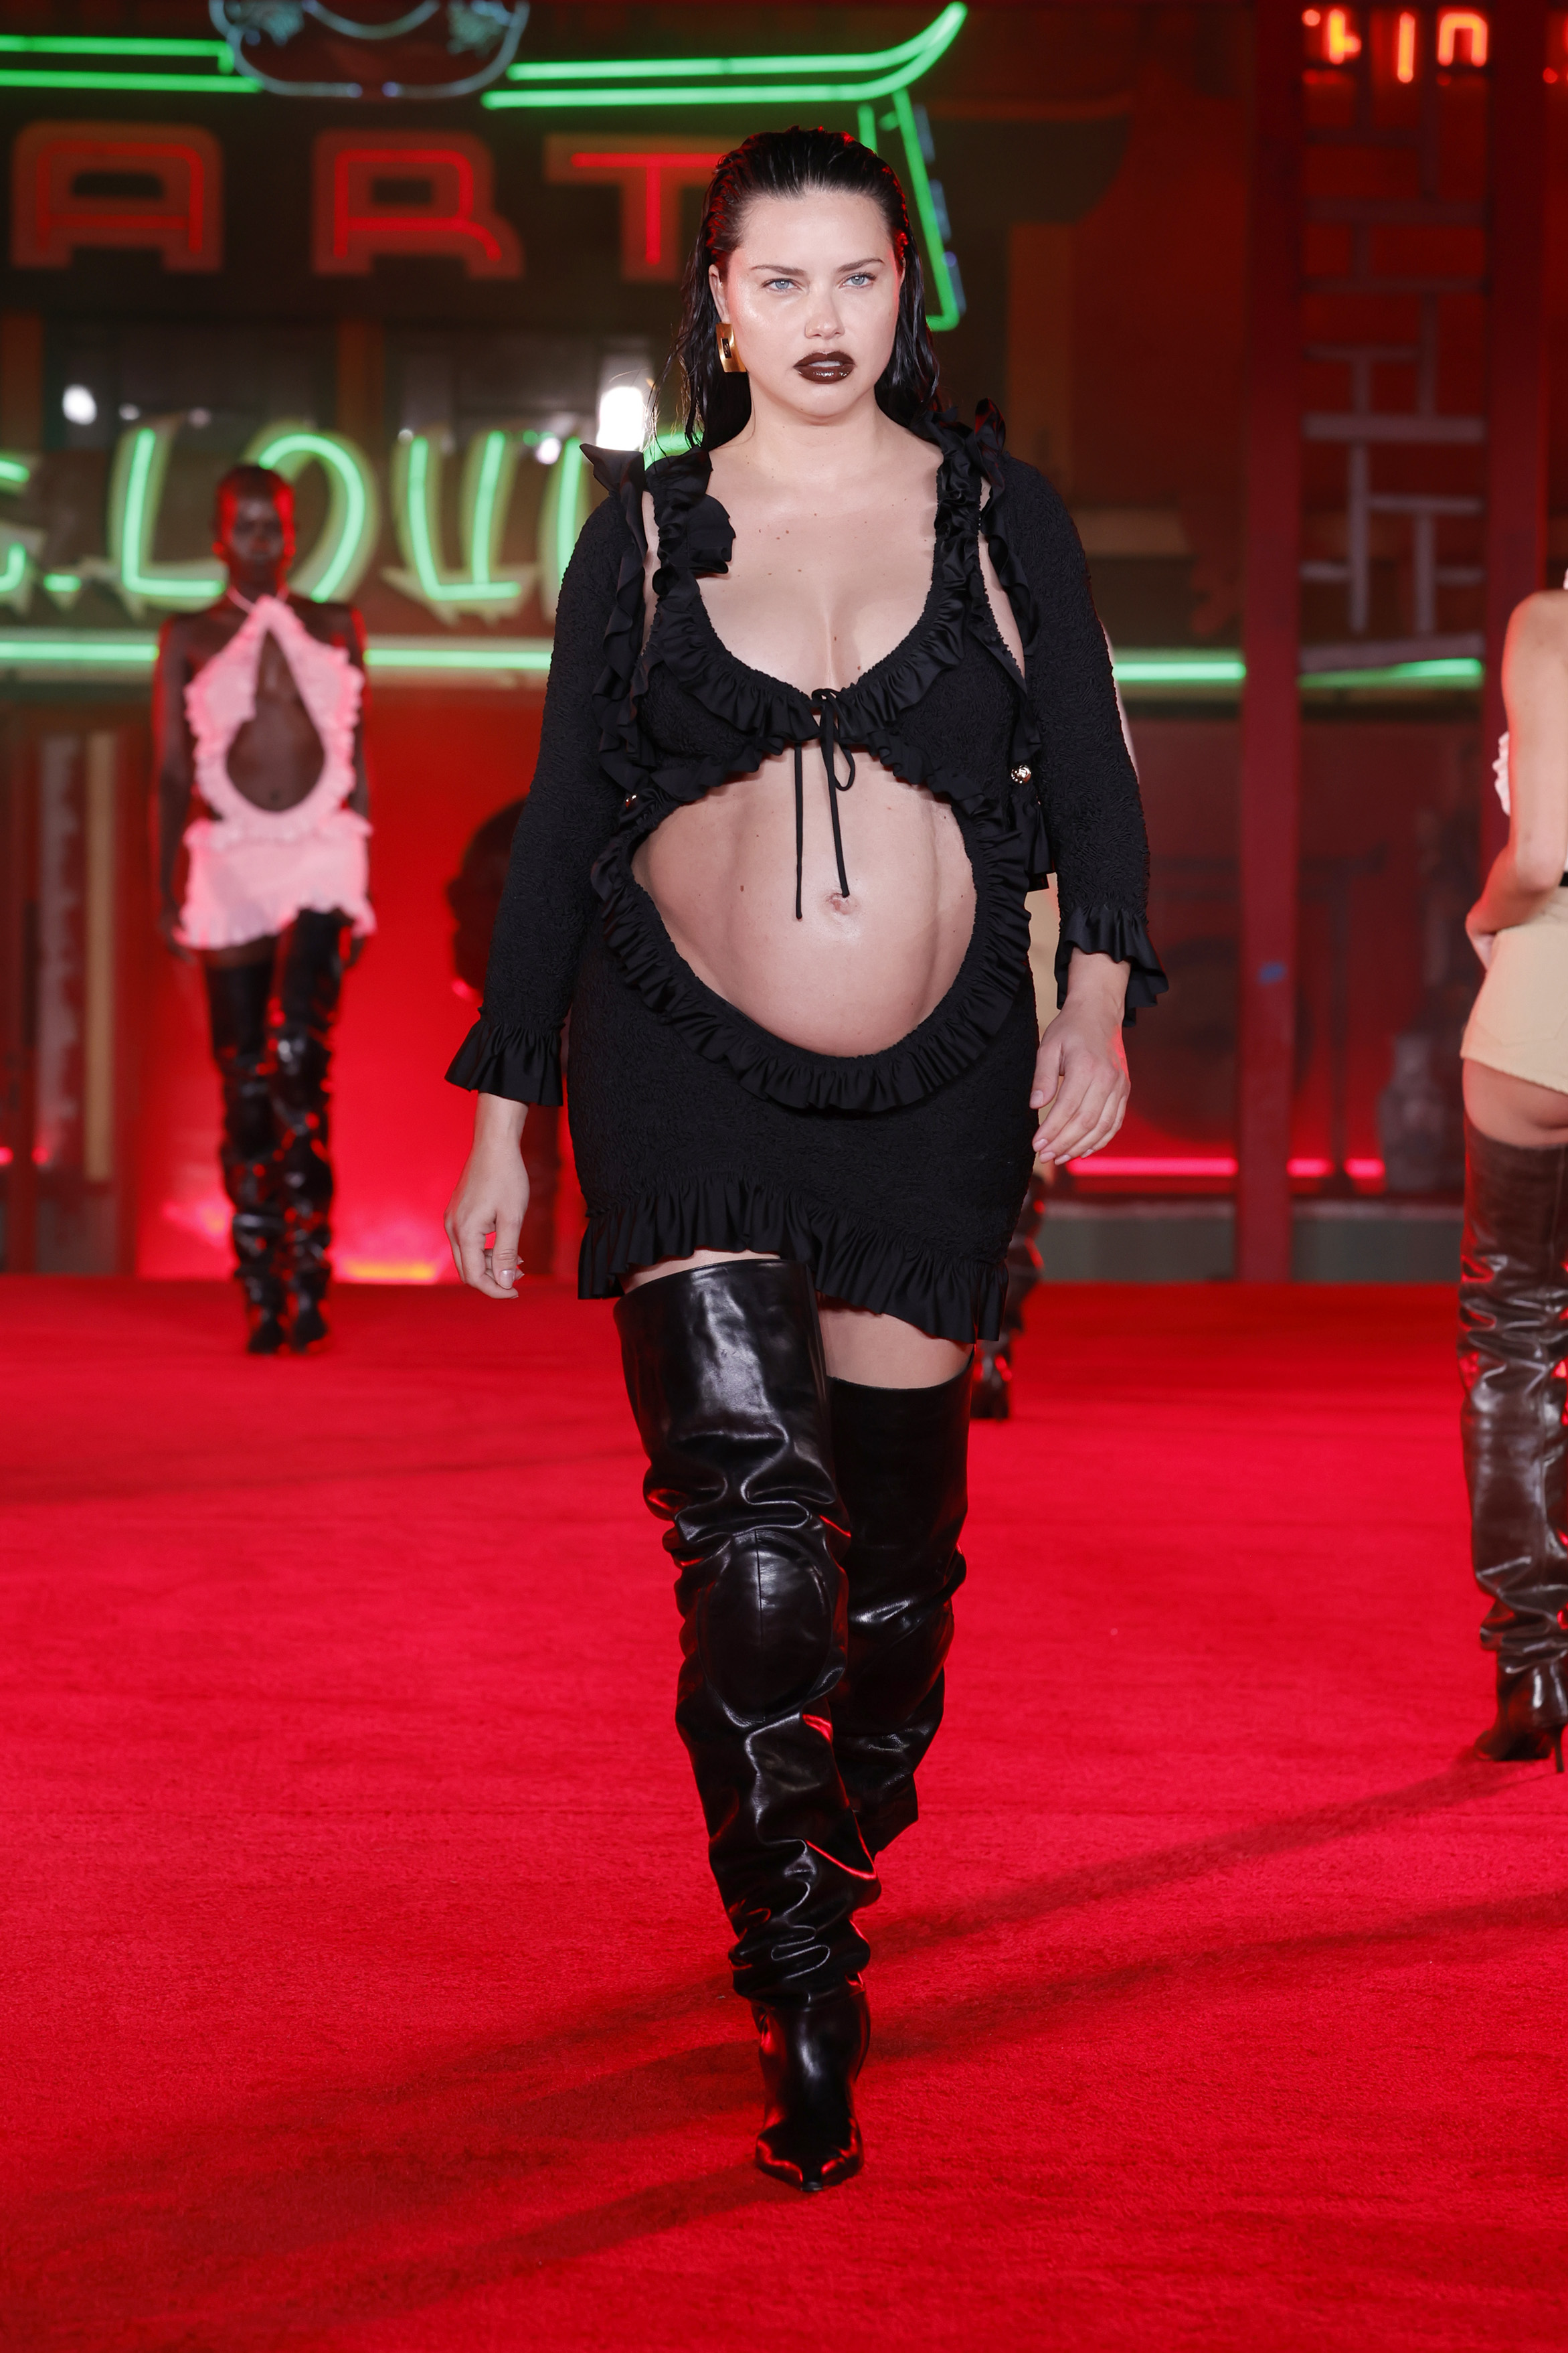 Беременная Адриана Лима показала голый живот на подиуме (фото, видео)